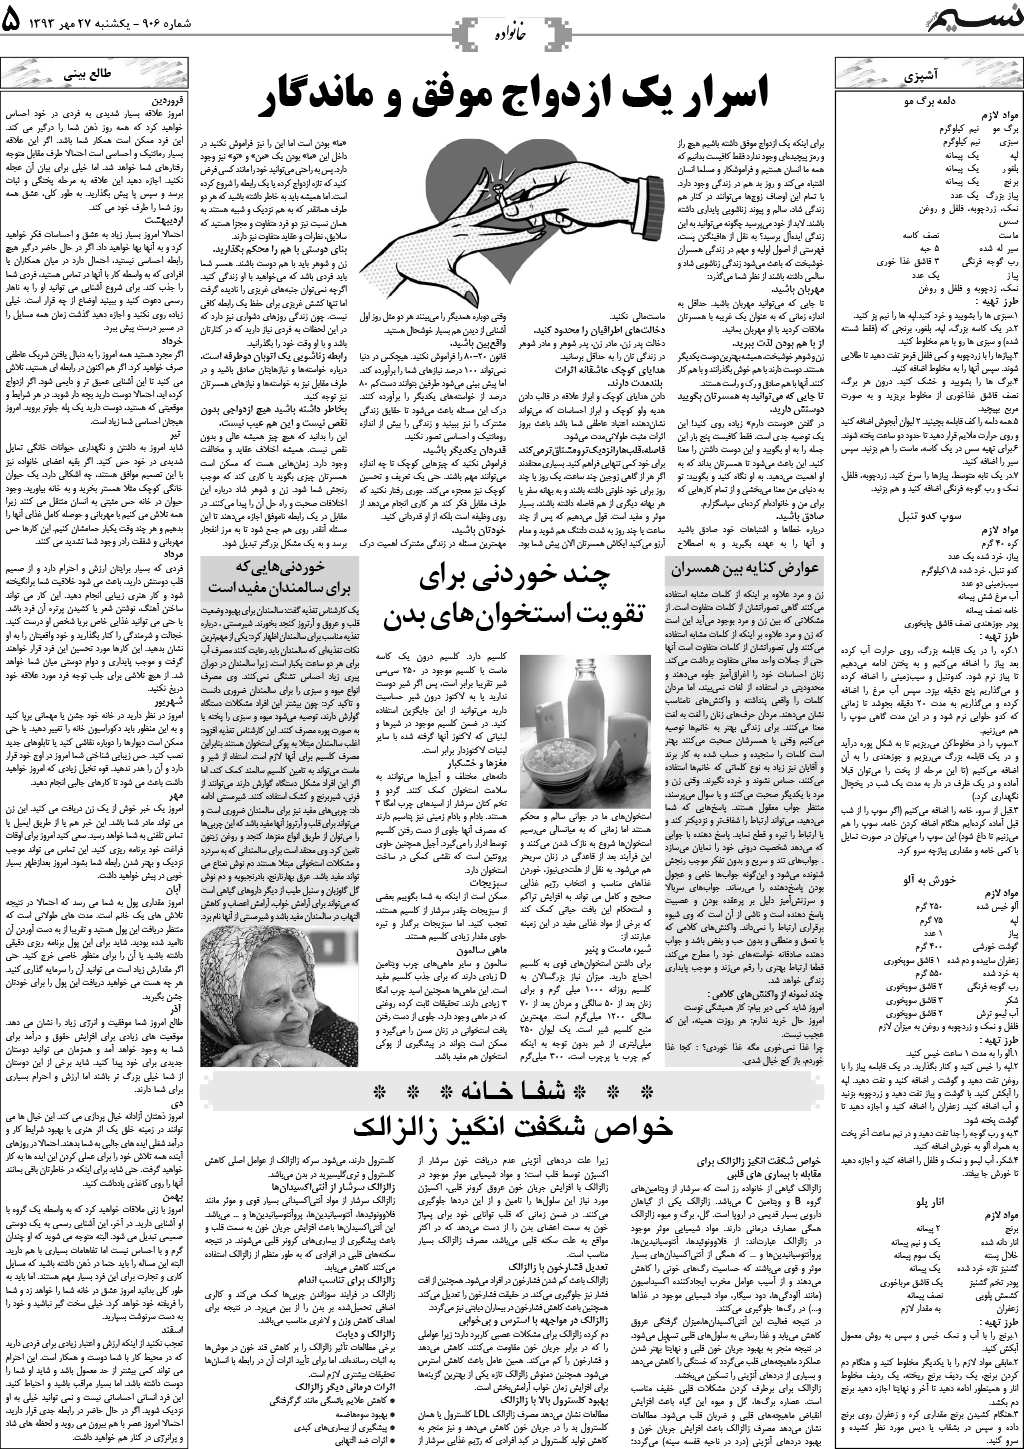 صفحه خانواده روزنامه نسیم خوزستان شماره ۸۱۶